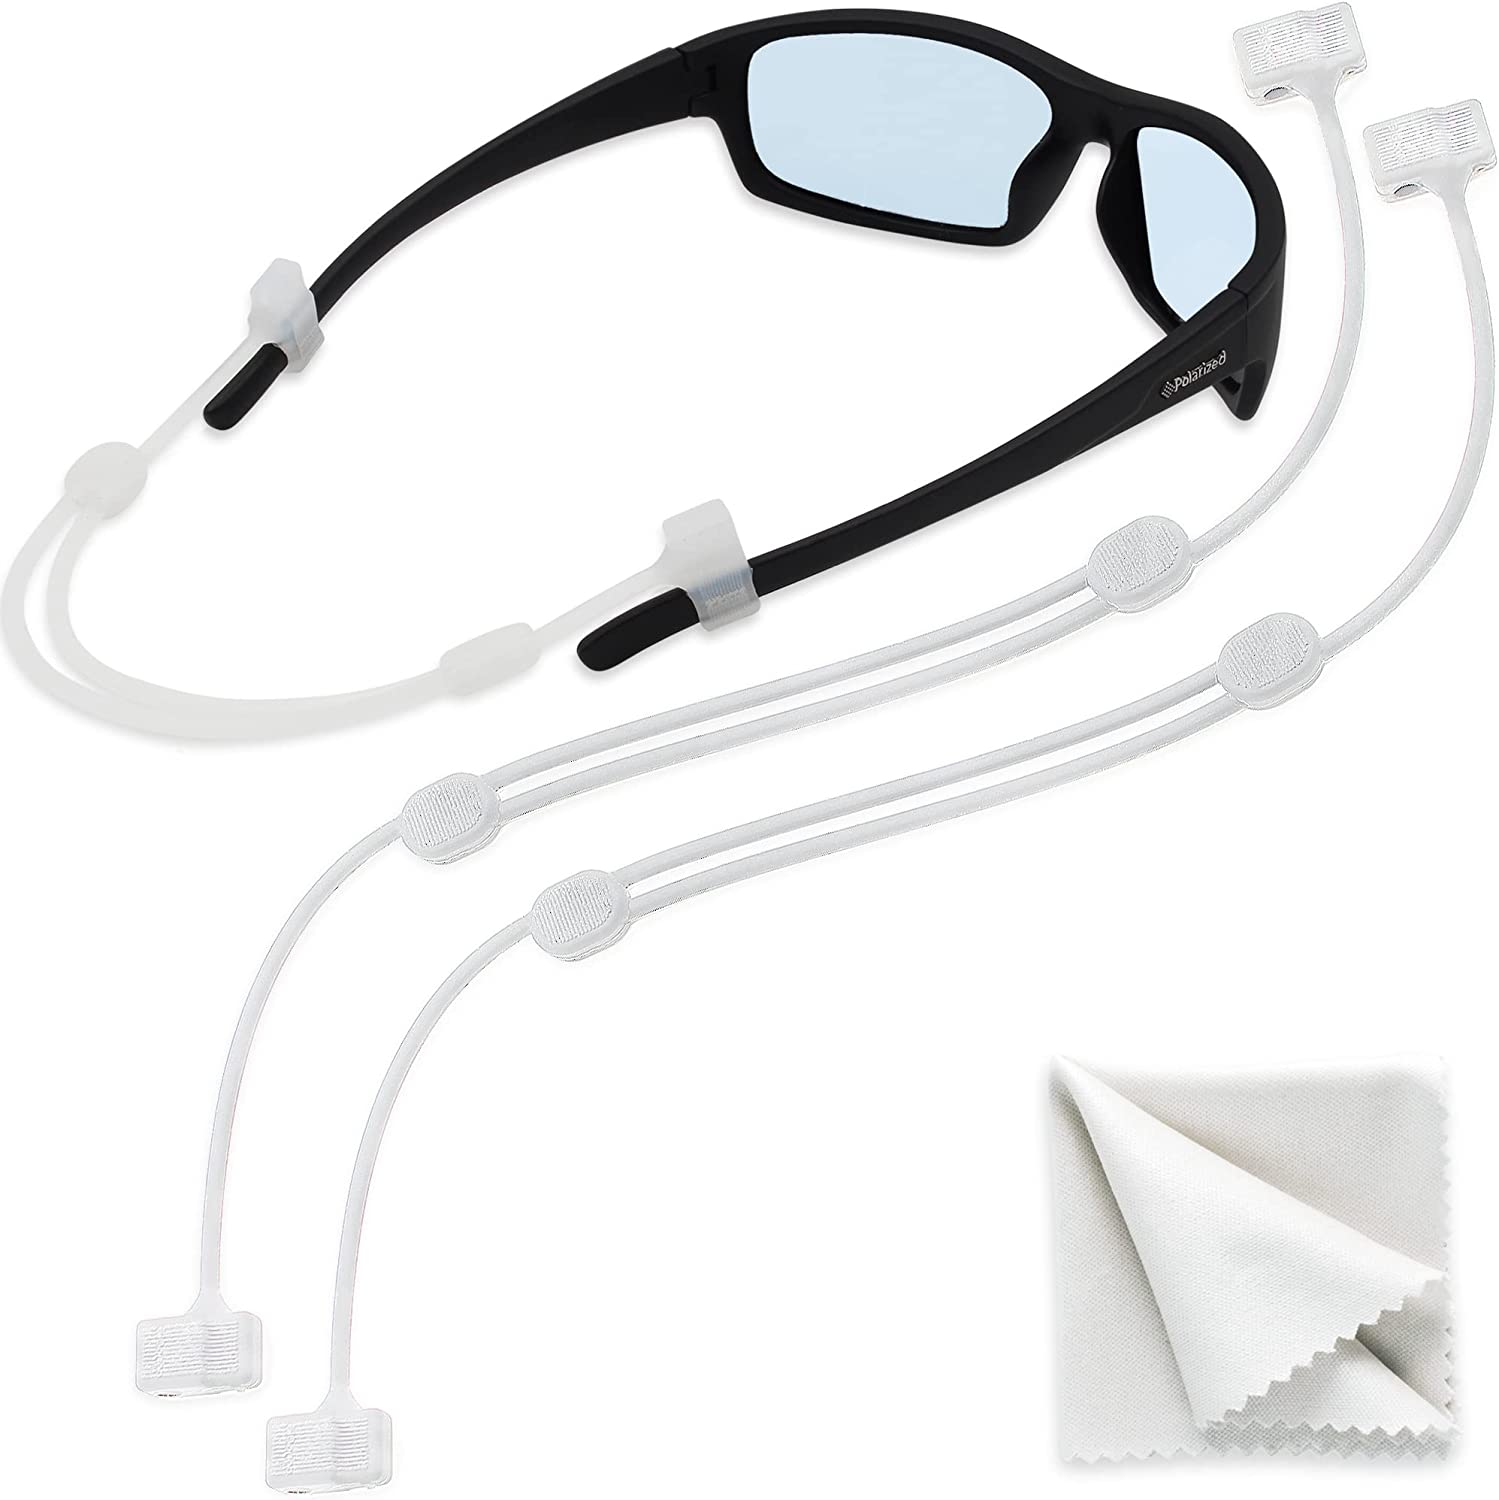 SIGONNA eyeglass holder - eye glasses holders around neck. – Sigonna